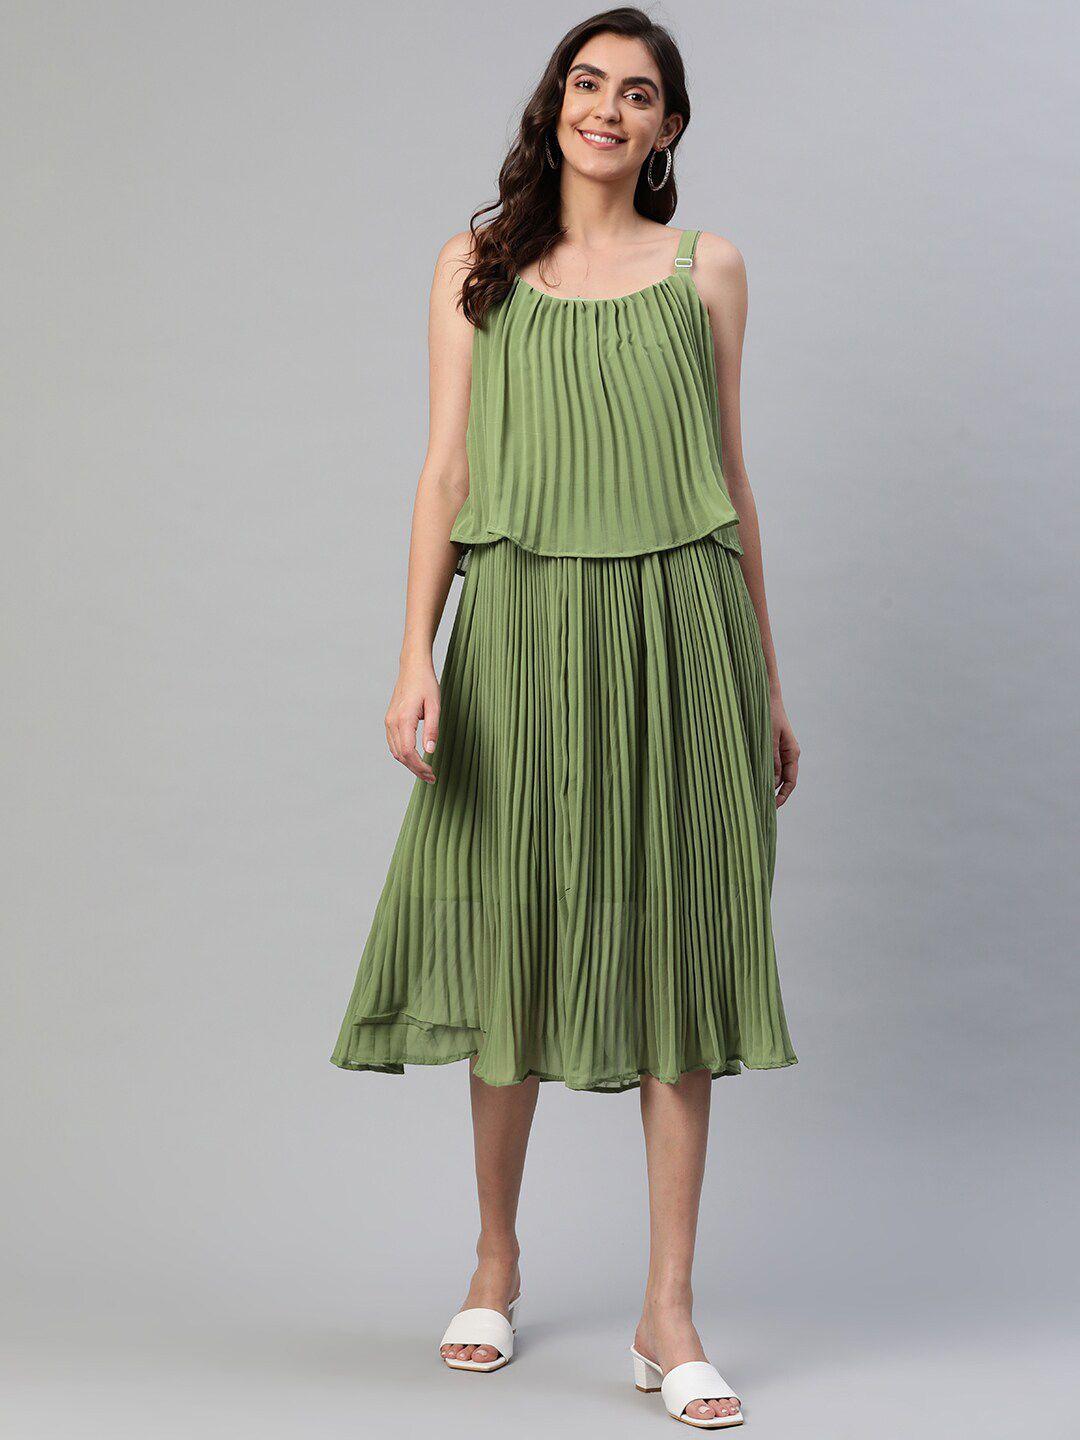 aarika green striped georgette a-line midi dress